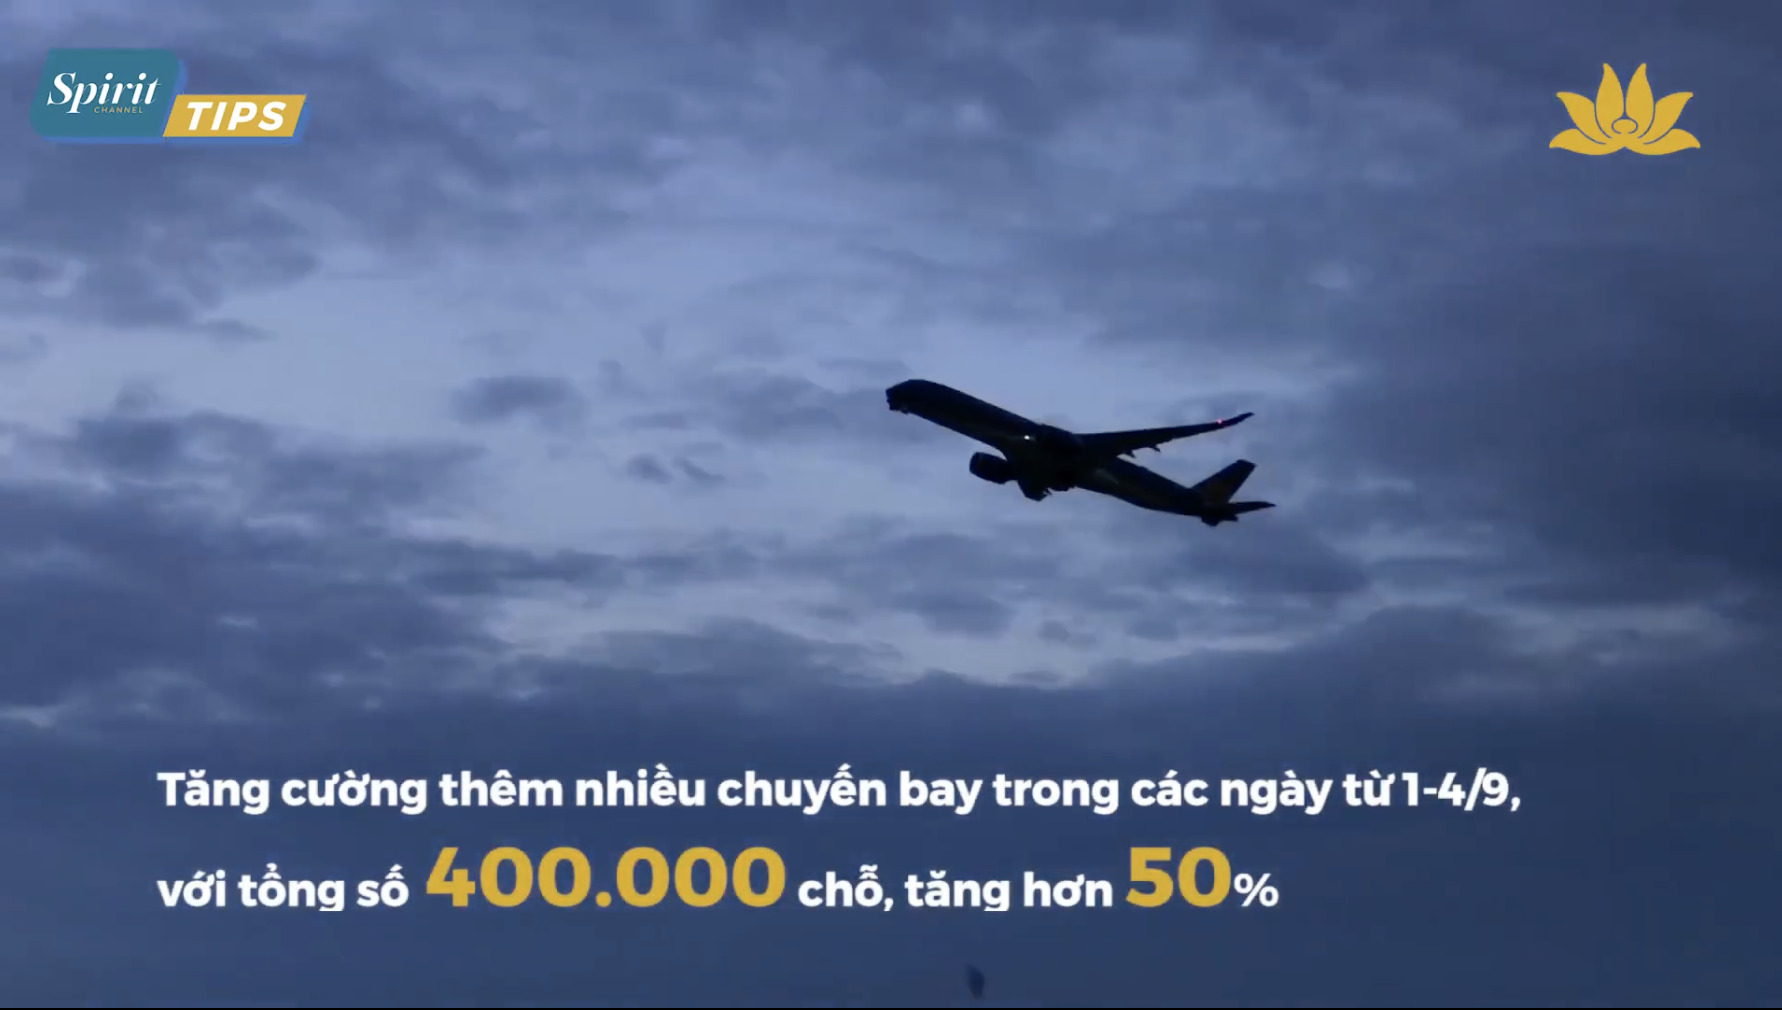 Video những Tip hay ho khi di chuyển bằng máy bay trong dịp lễ của Vietnam Airlines (Ảnh: Vietnam Airlines)